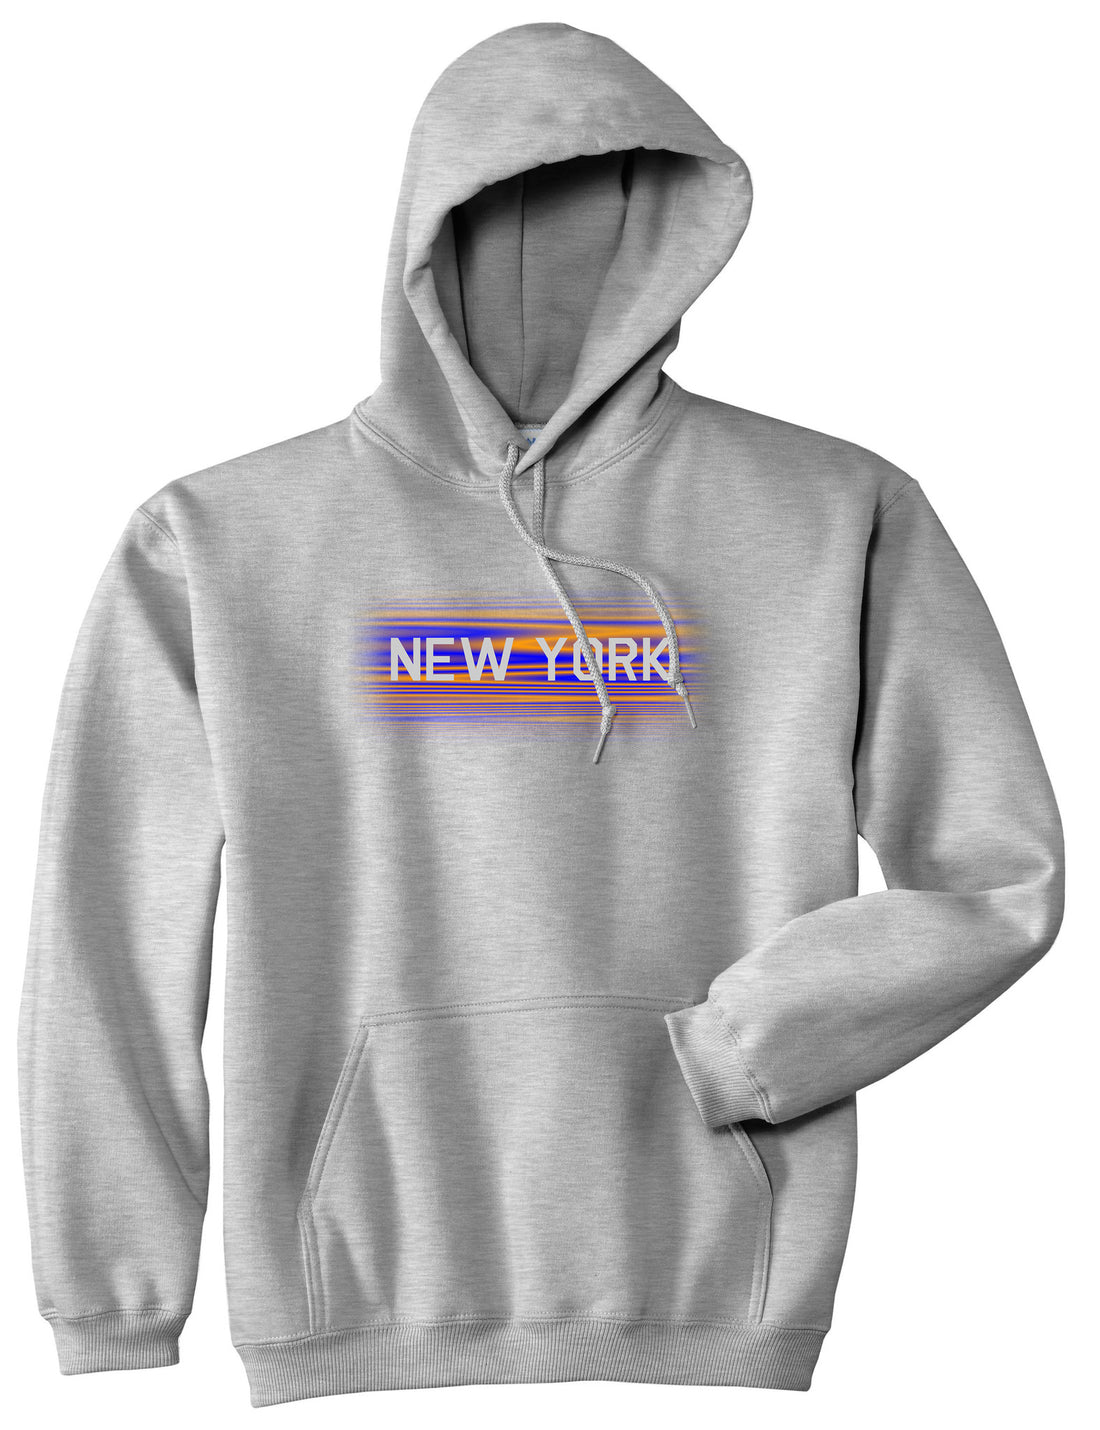 New York Hometeam Pullover Hoodie in Grey